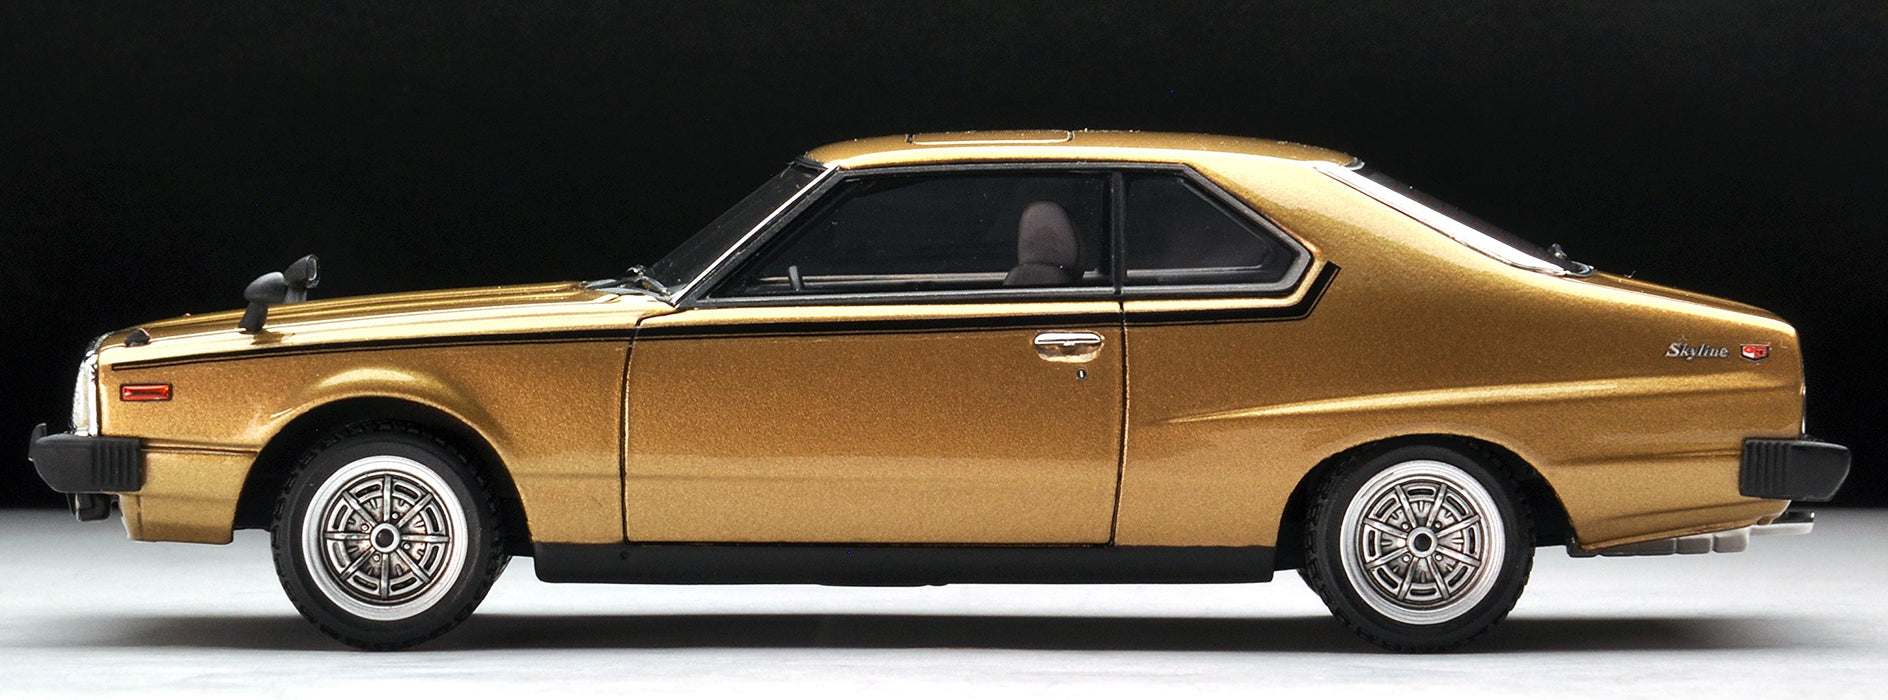 Tomytec Ignition Model Nissan Skyline 2000Gt-Es 1/43 Scale Golden Car Finished Product